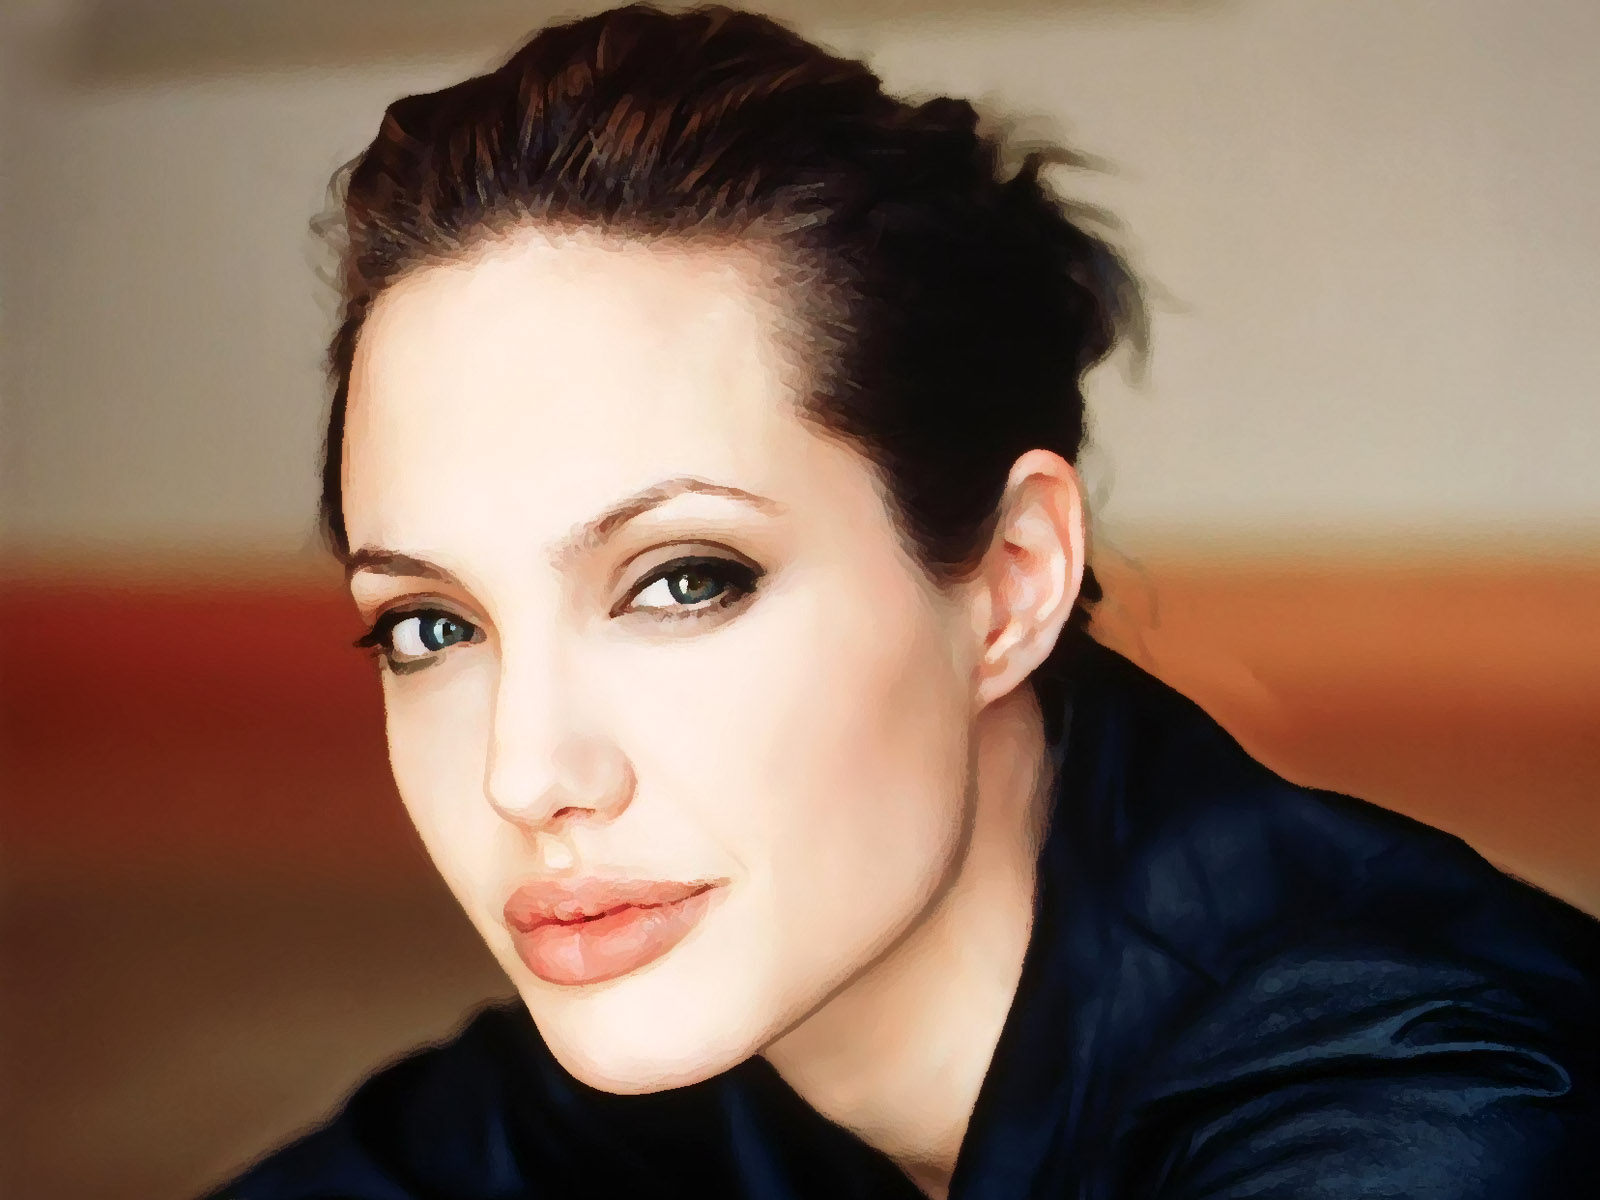 壁纸1920×1200好莱坞女星高清合辑 一 Angelina Jolie 安吉丽娜 朱莉高清壁纸壁纸,好莱坞女星高清合辑(一)壁纸图片-明星 ...